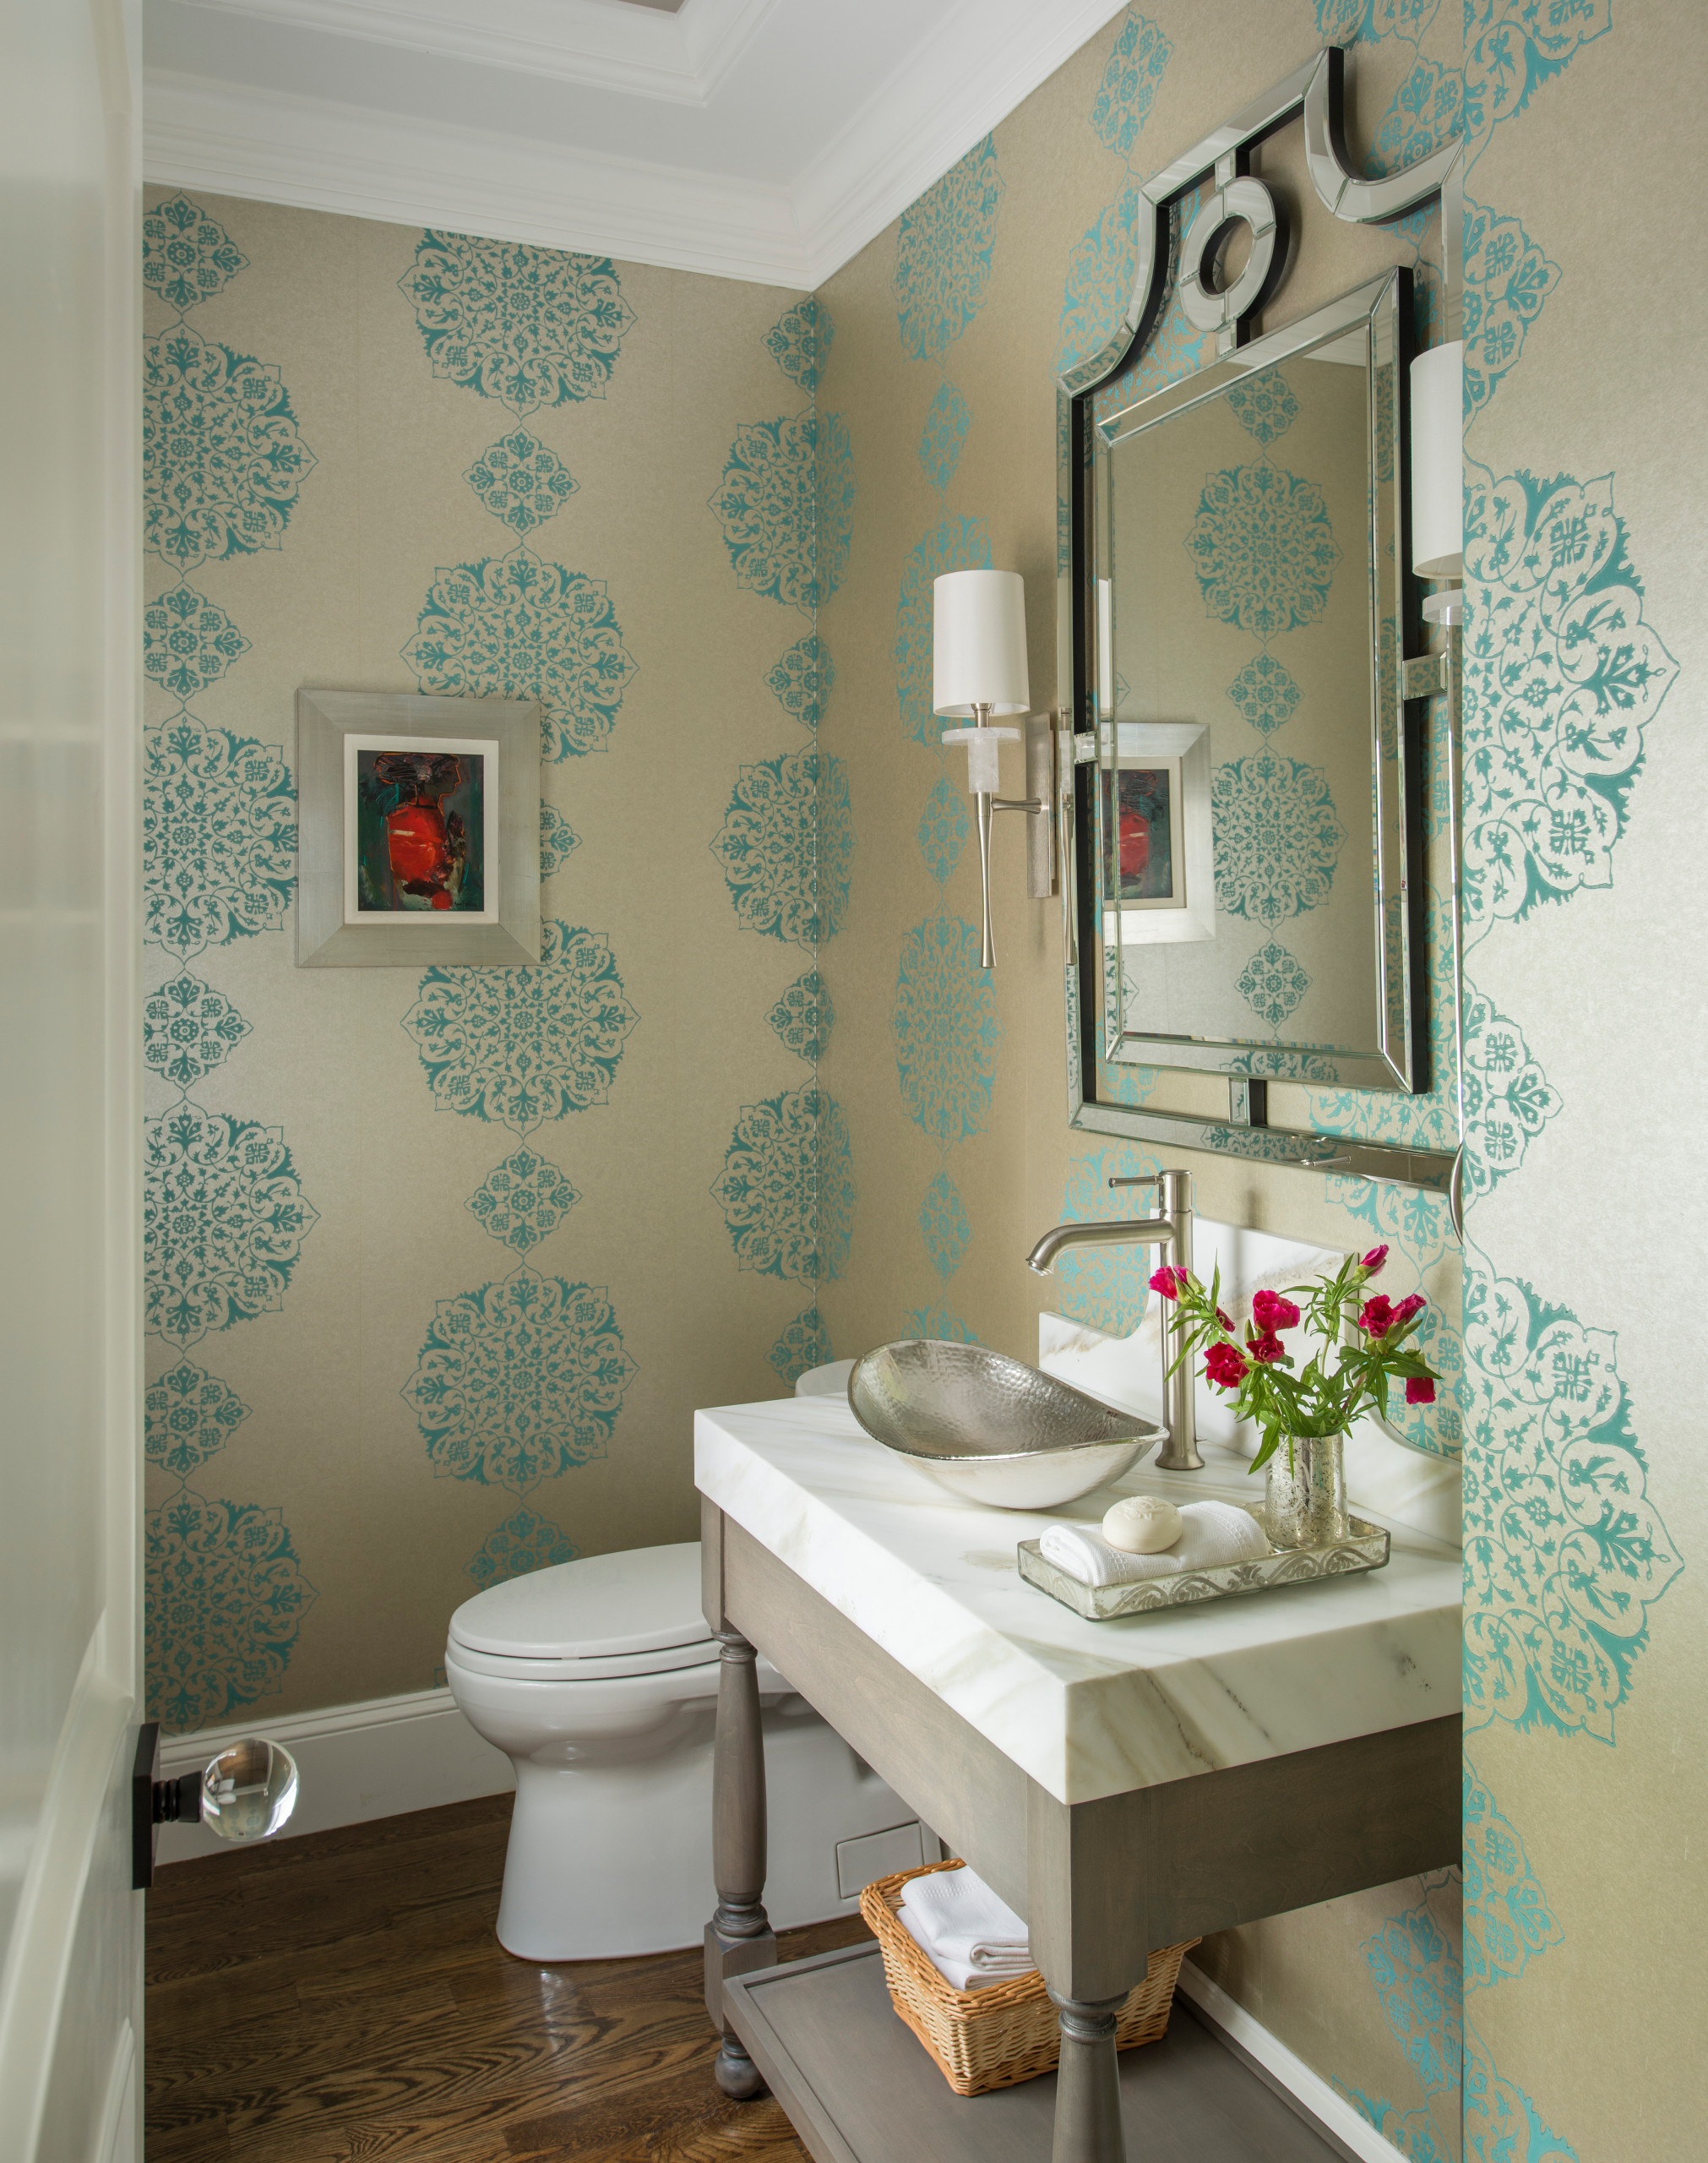 Ванная комната в зеленых цветах: 78 идей на фото дизайна интерьера от фотодетки.рф | фотодетки.рф